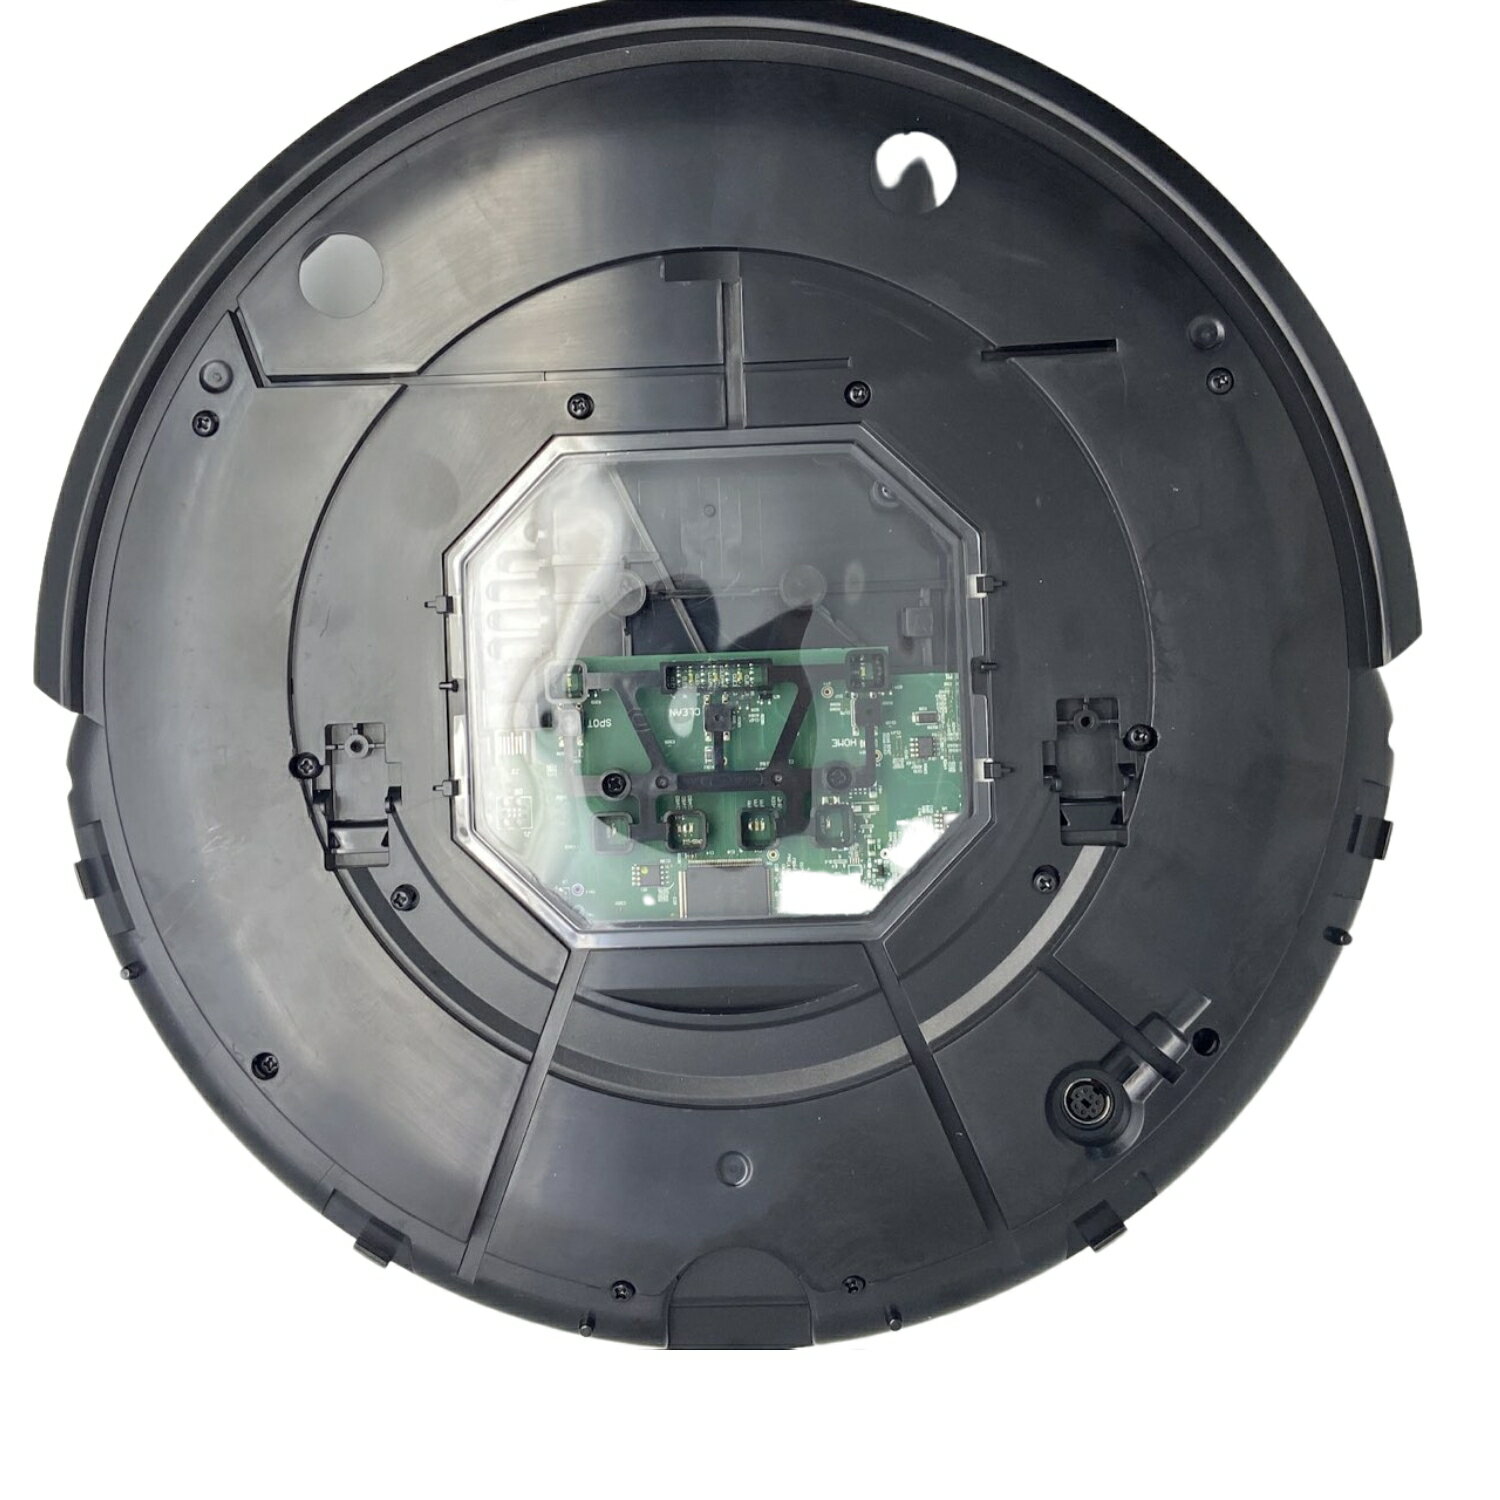 [4美國直購] iRobot Roomba e6 掃地機器人 機殼 含主機板 維修研究替換用 不含上蓋提把配件_u35